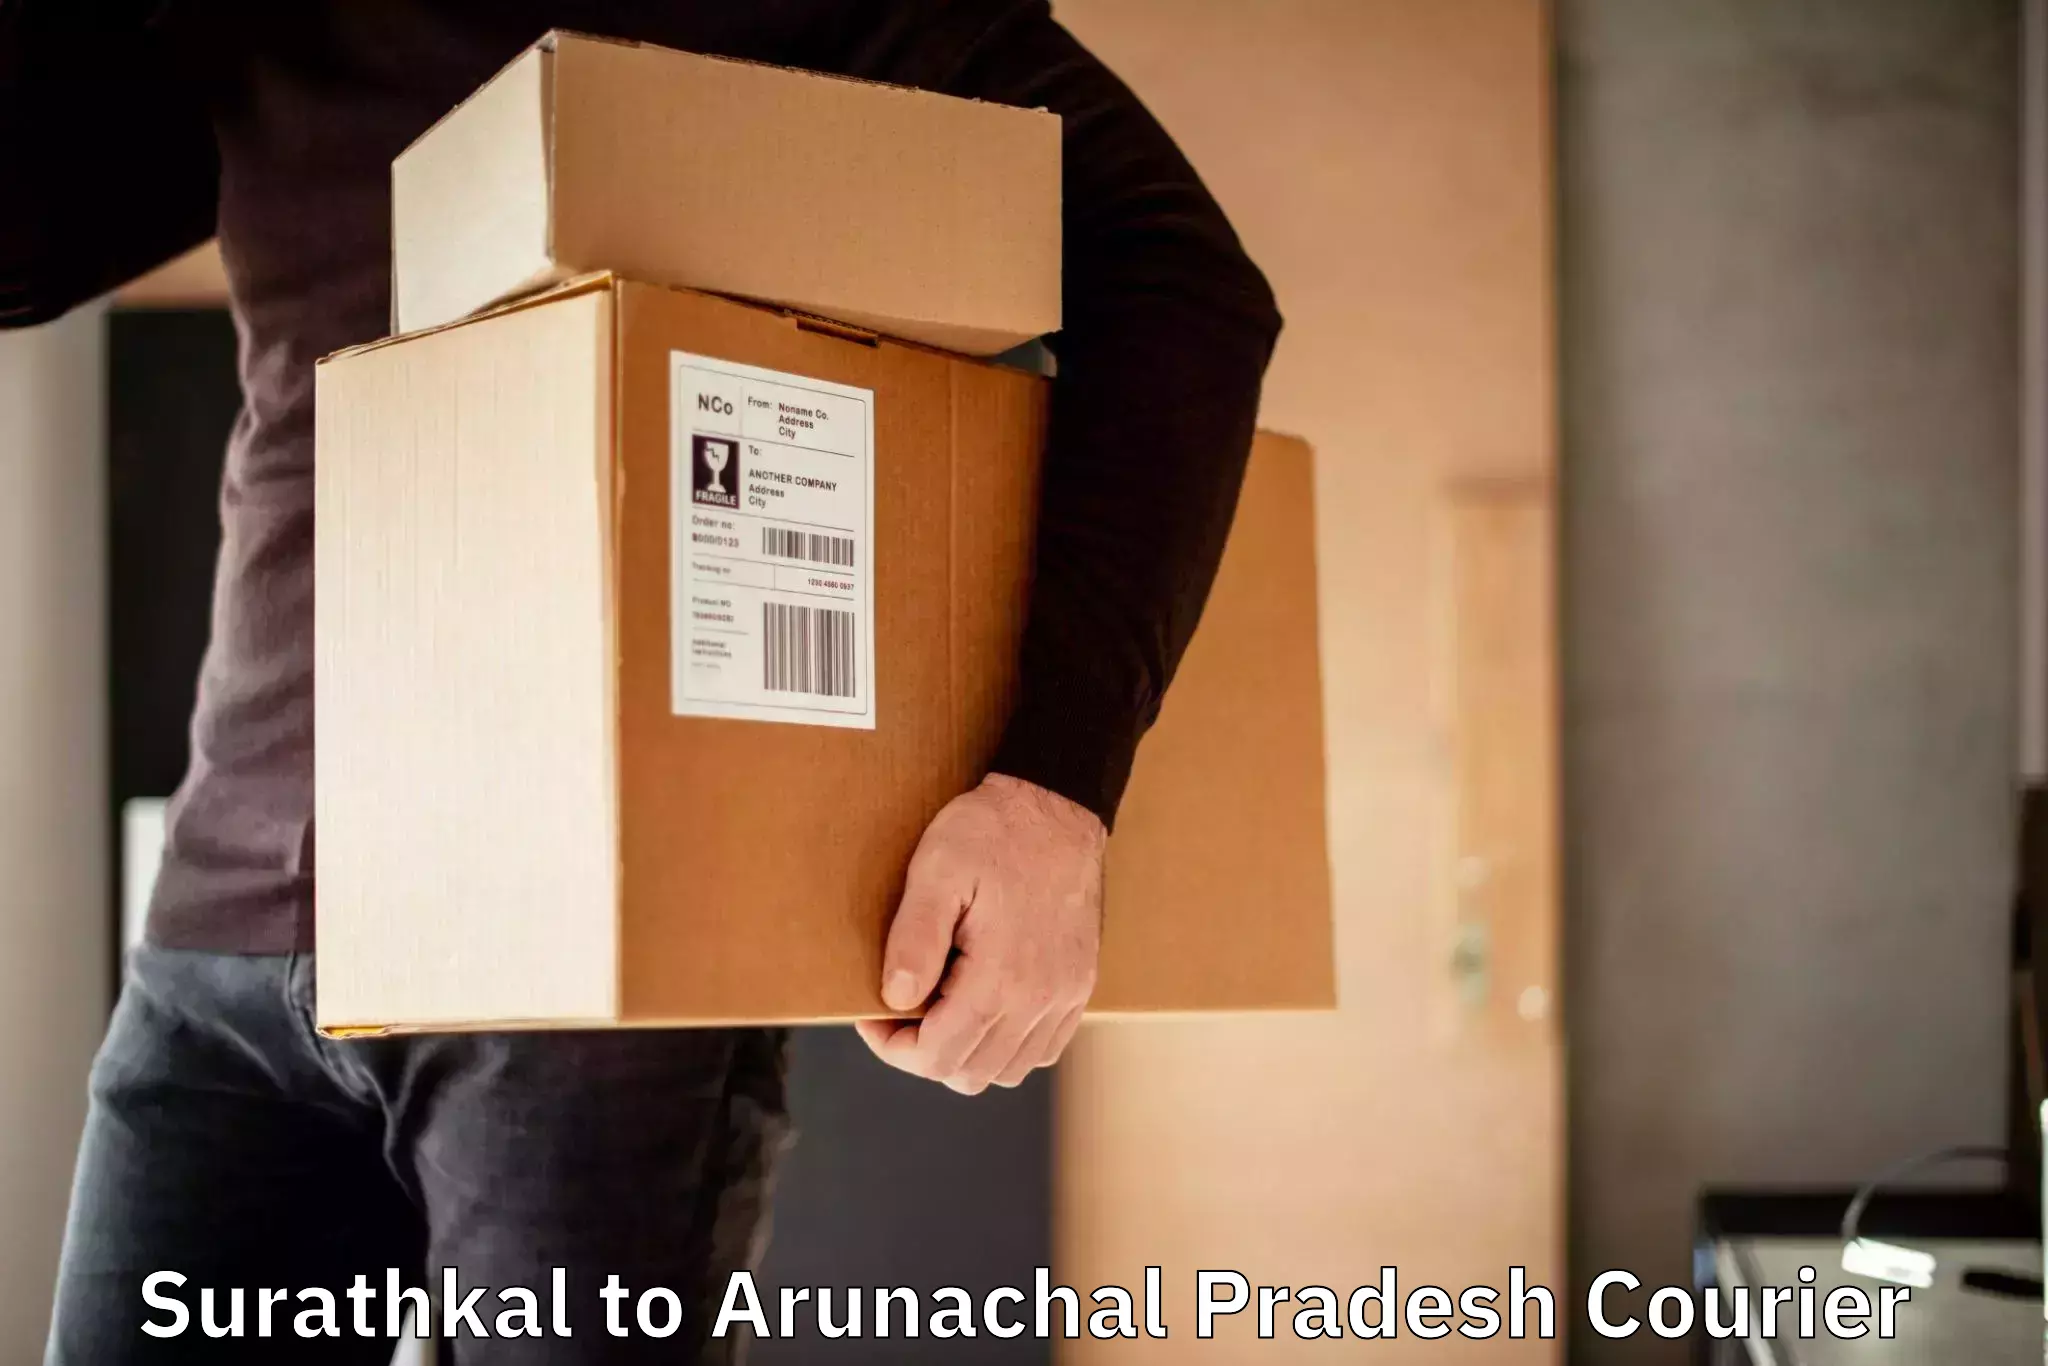 Reliable parcel services Surathkal to Arunachal Pradesh